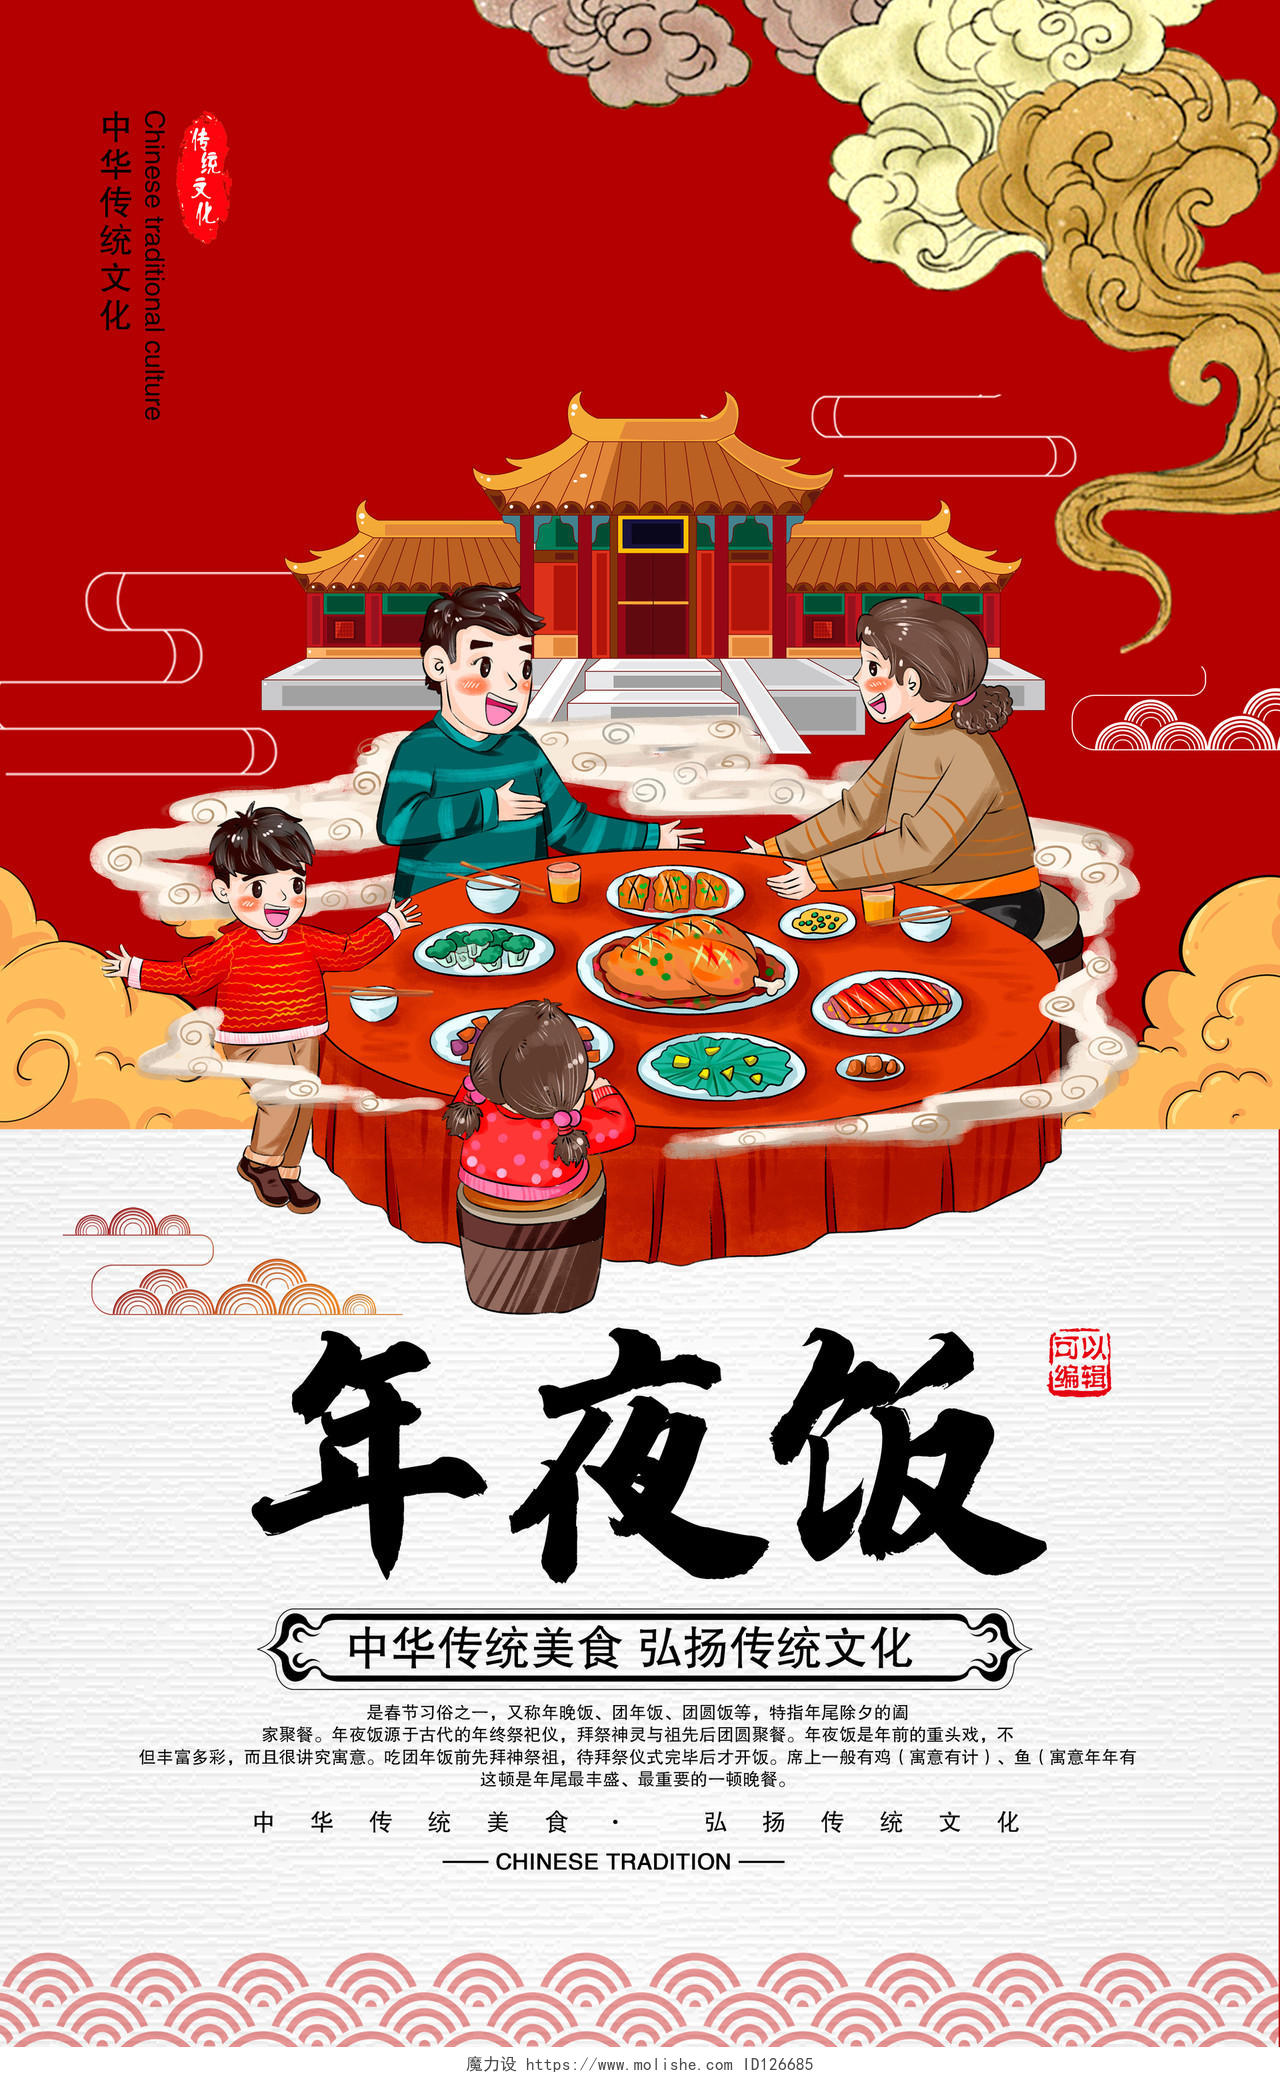 年夜饭团圆饭全家福年会预订仿古中国风大气2020年夜饭宣传海报设计